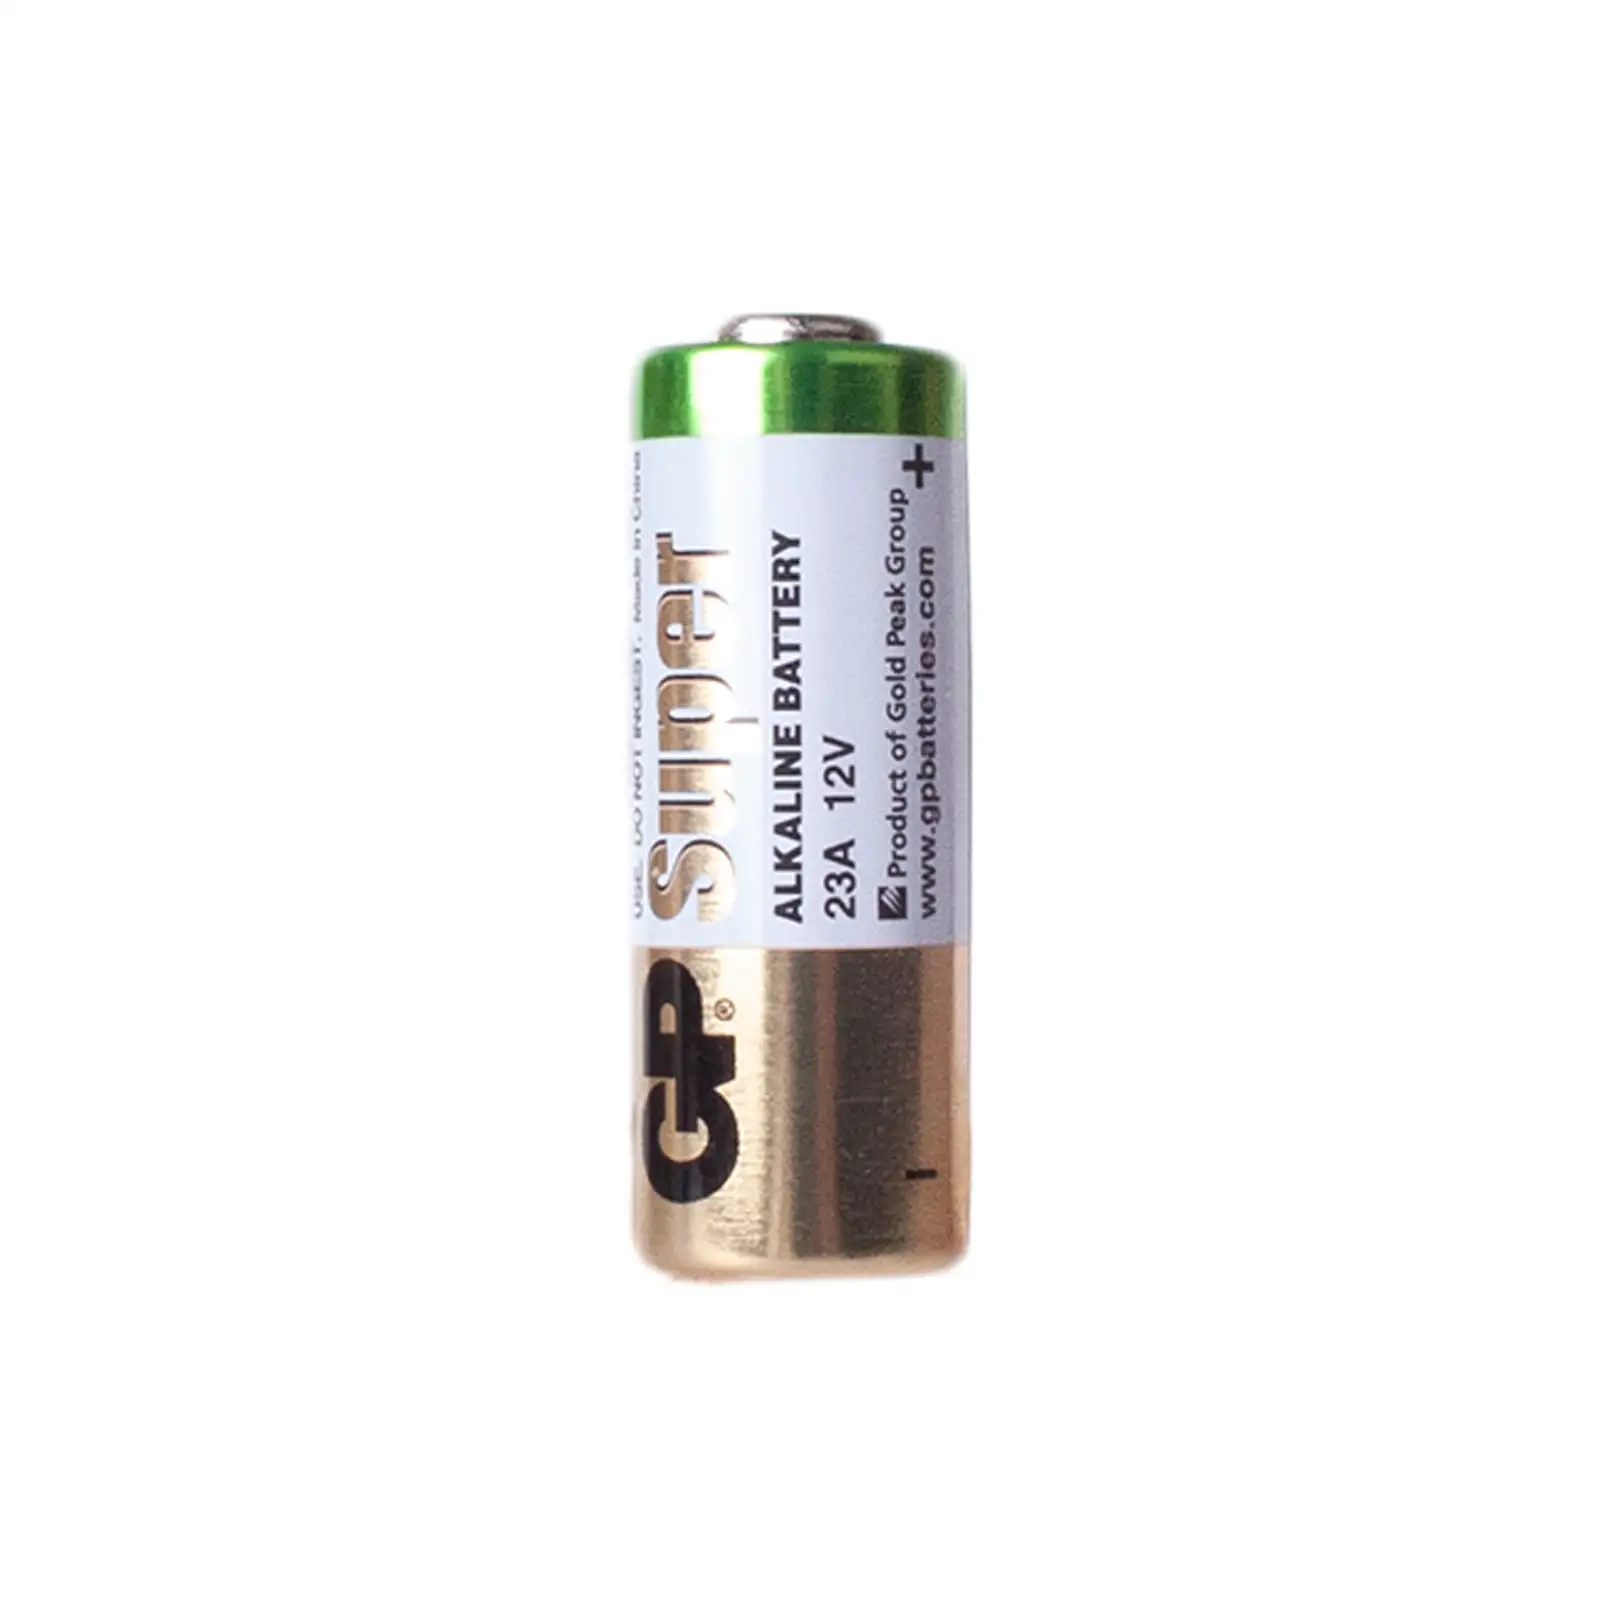 Batterie Golden Power 23A 12V